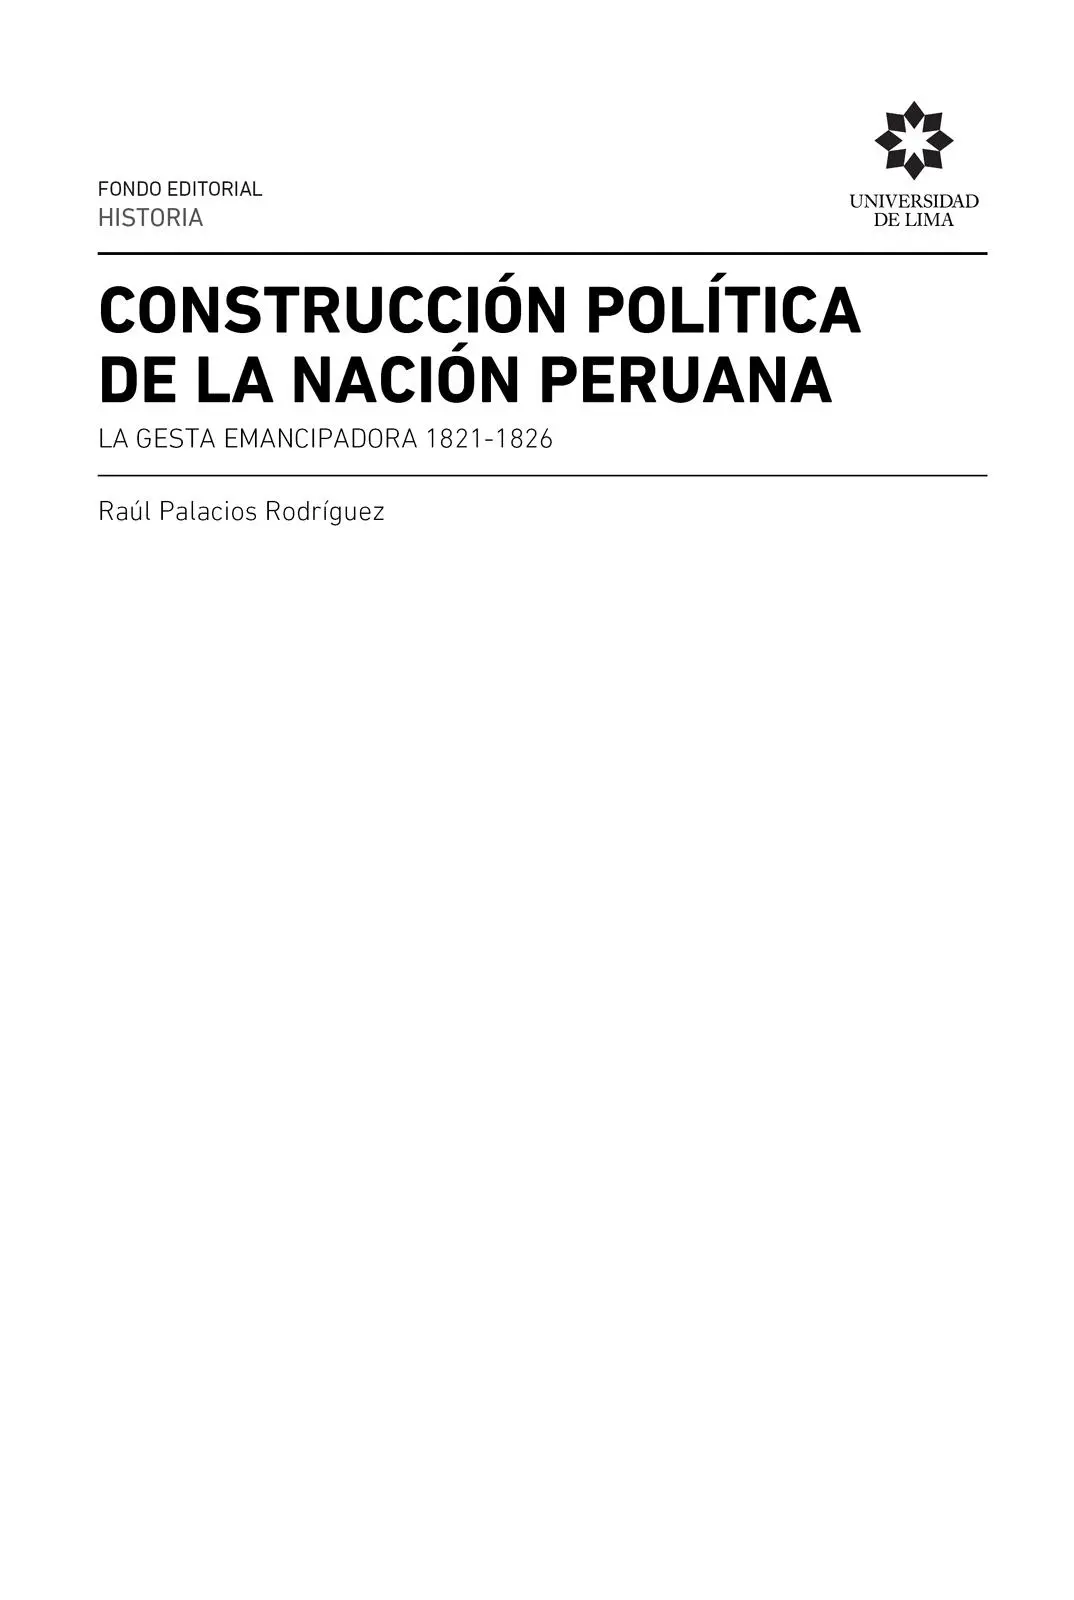 Palacios Rodríguez Raúl 1945 Construcción política de la nación peruana - фото 2